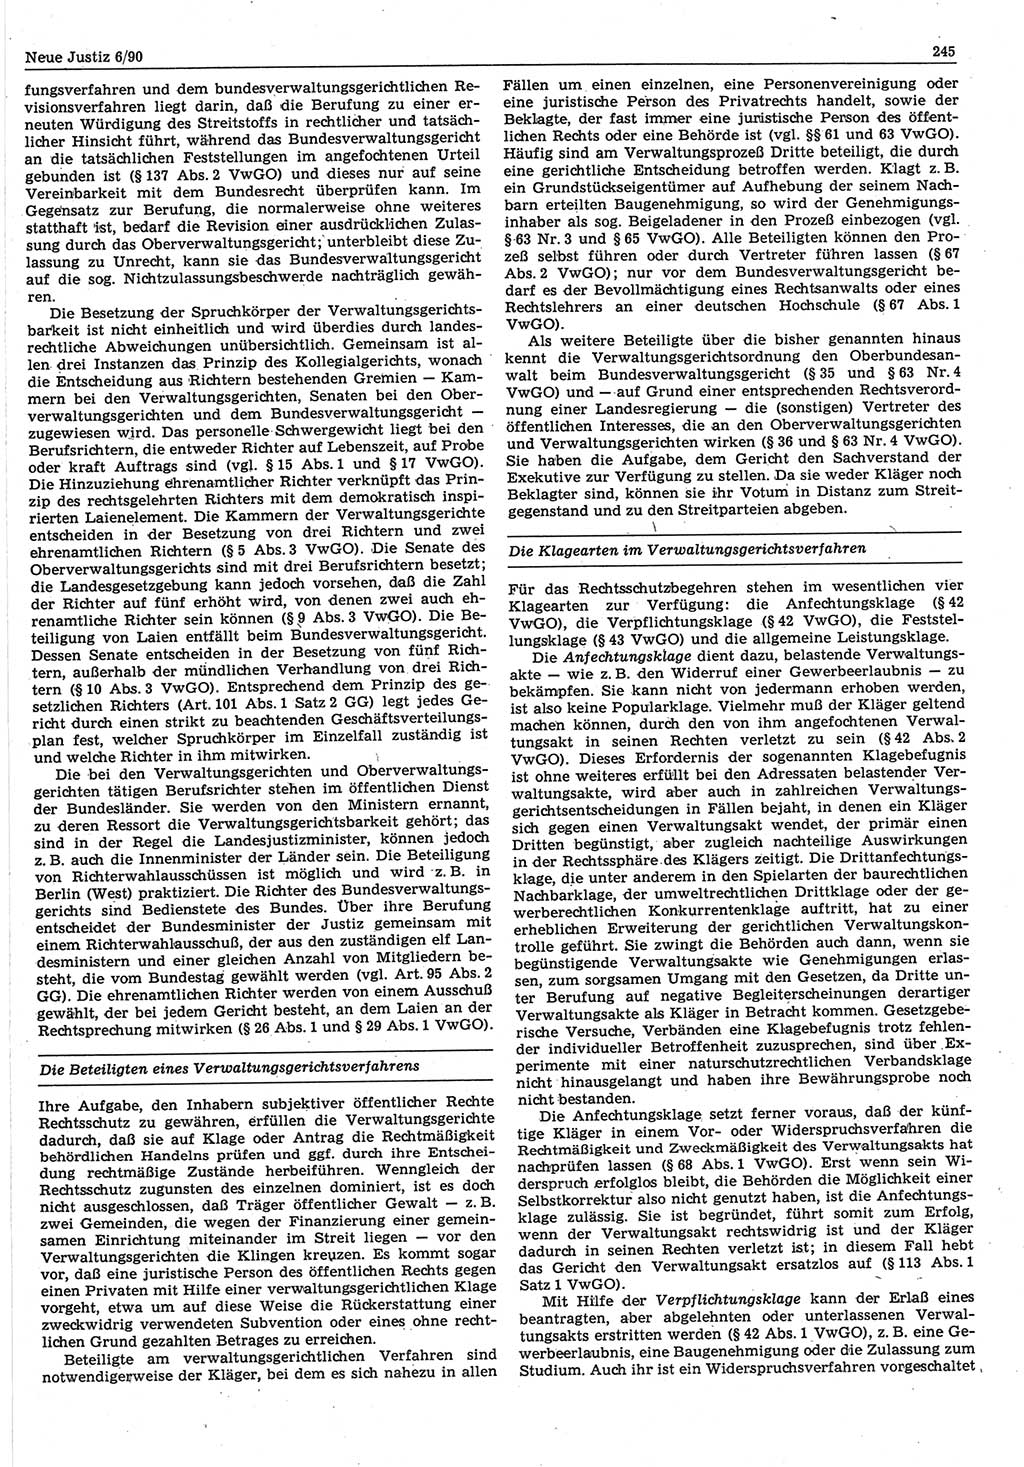 Neue Justiz (NJ), Zeitschrift für Rechtsetzung und Rechtsanwendung [Deutsche Demokratische Republik (DDR)], 44. Jahrgang 1990, Seite 245 (NJ DDR 1990, S. 245)